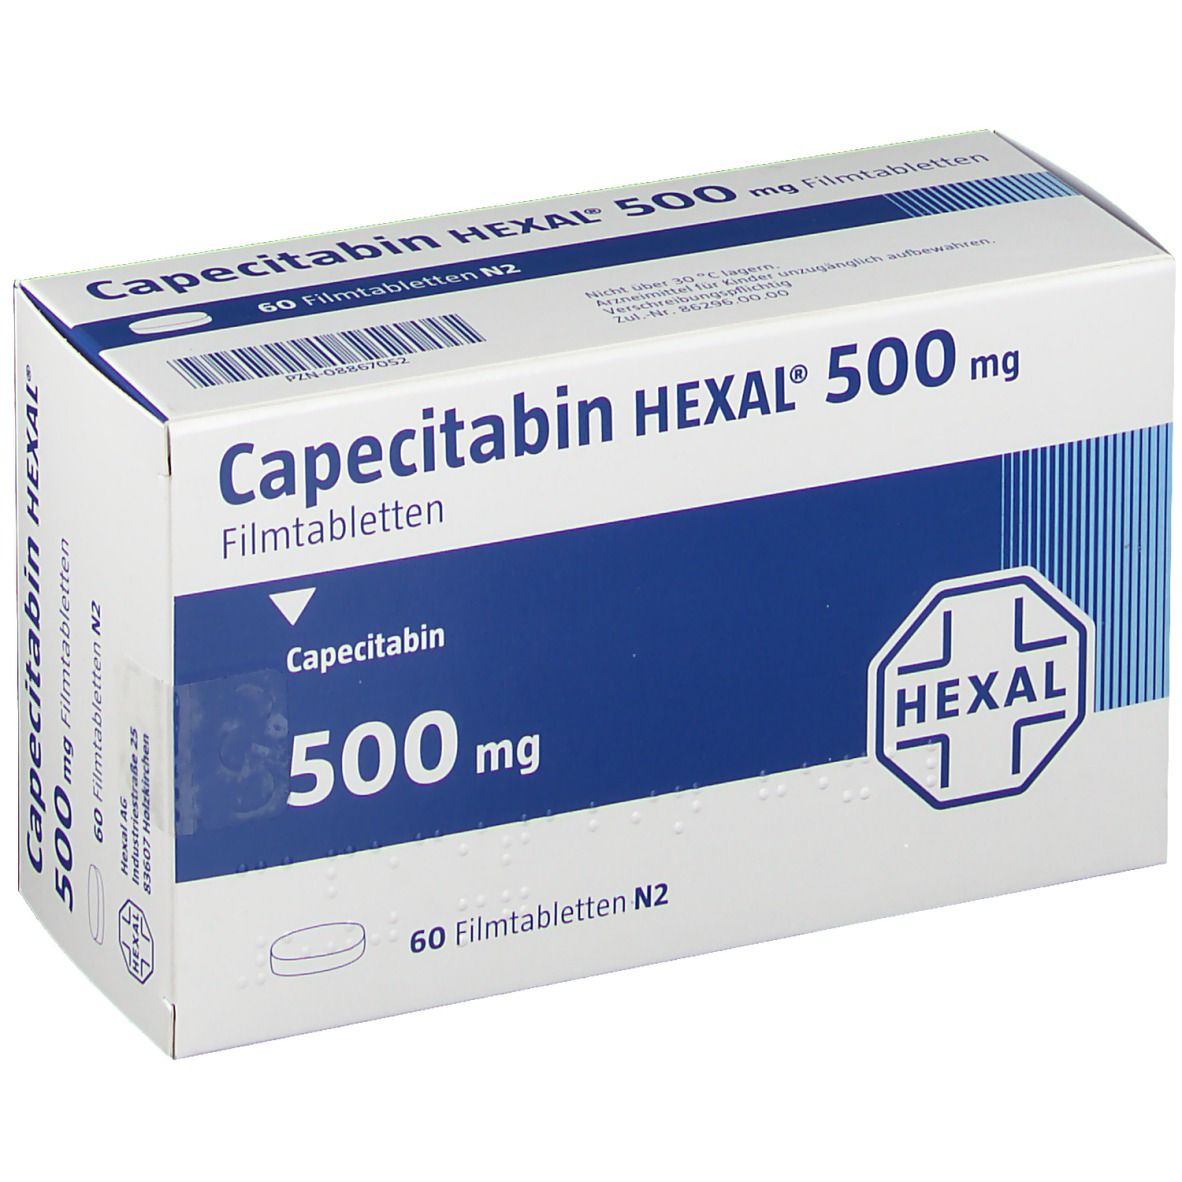 Capecitabin HEXAL® 500 mg